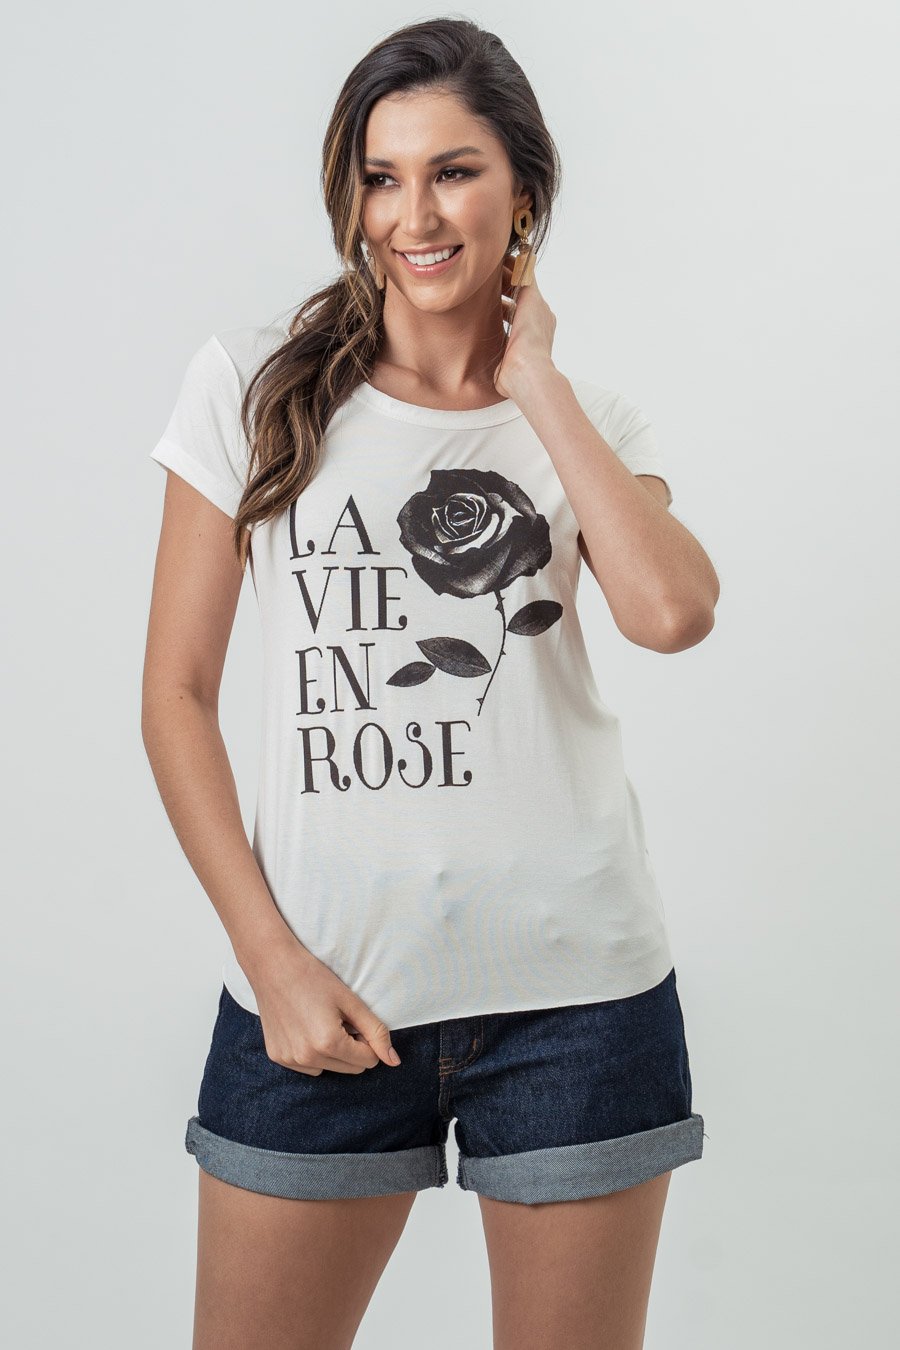 Camisetas Femininas T-shirts Blusinhas Varejo ( Escolha as Suas